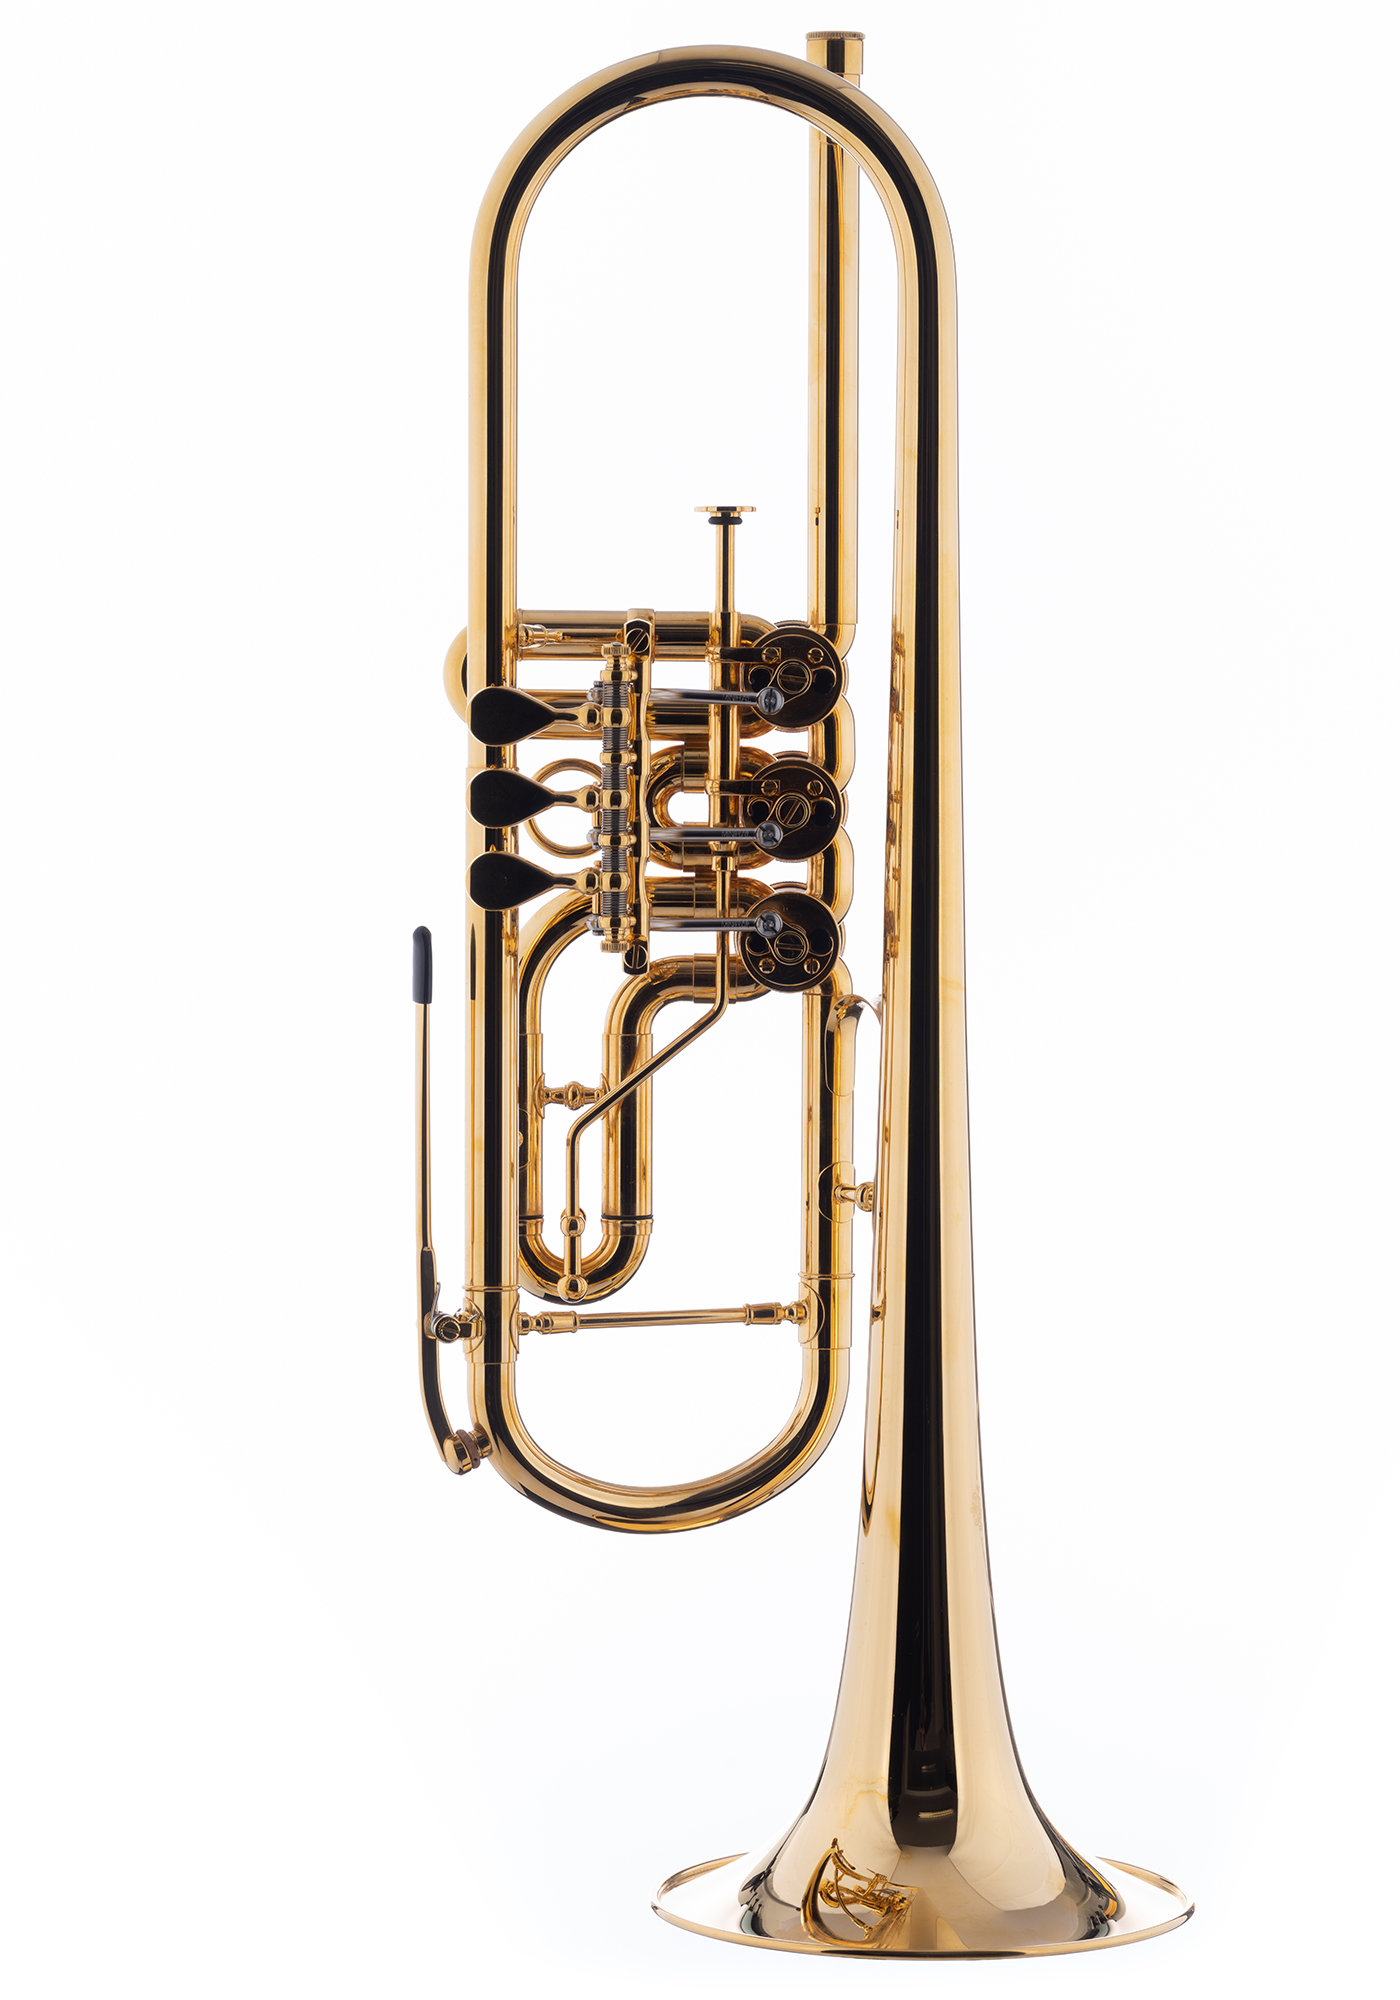 Schagerl Bb-Trumpet "WIEN" gold plated